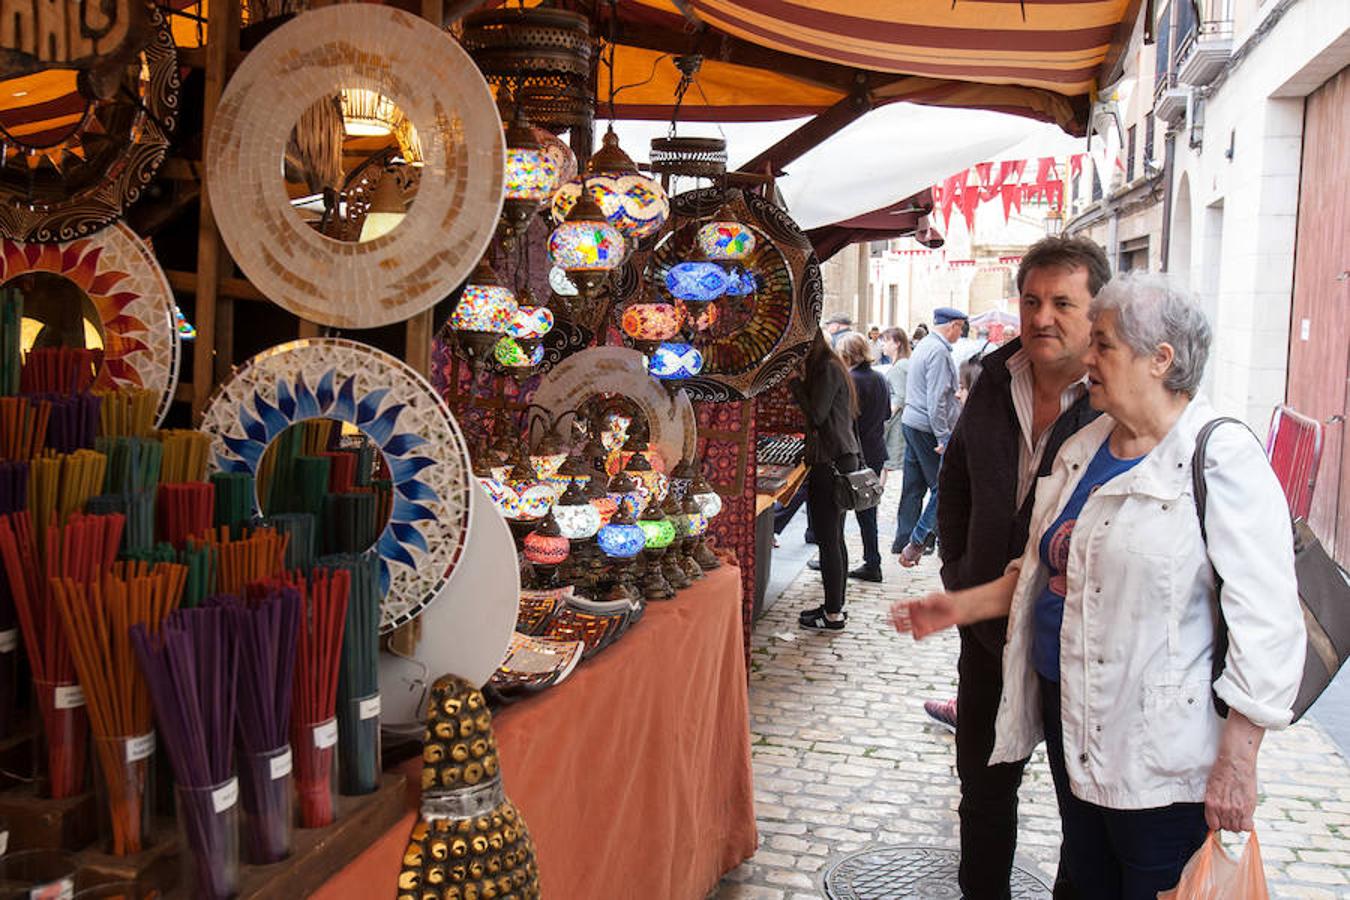 El latido de la calle con un singular mercado renacentista que sorprende por vistosidad, colorido, y que es un regalo para los sentidos. 